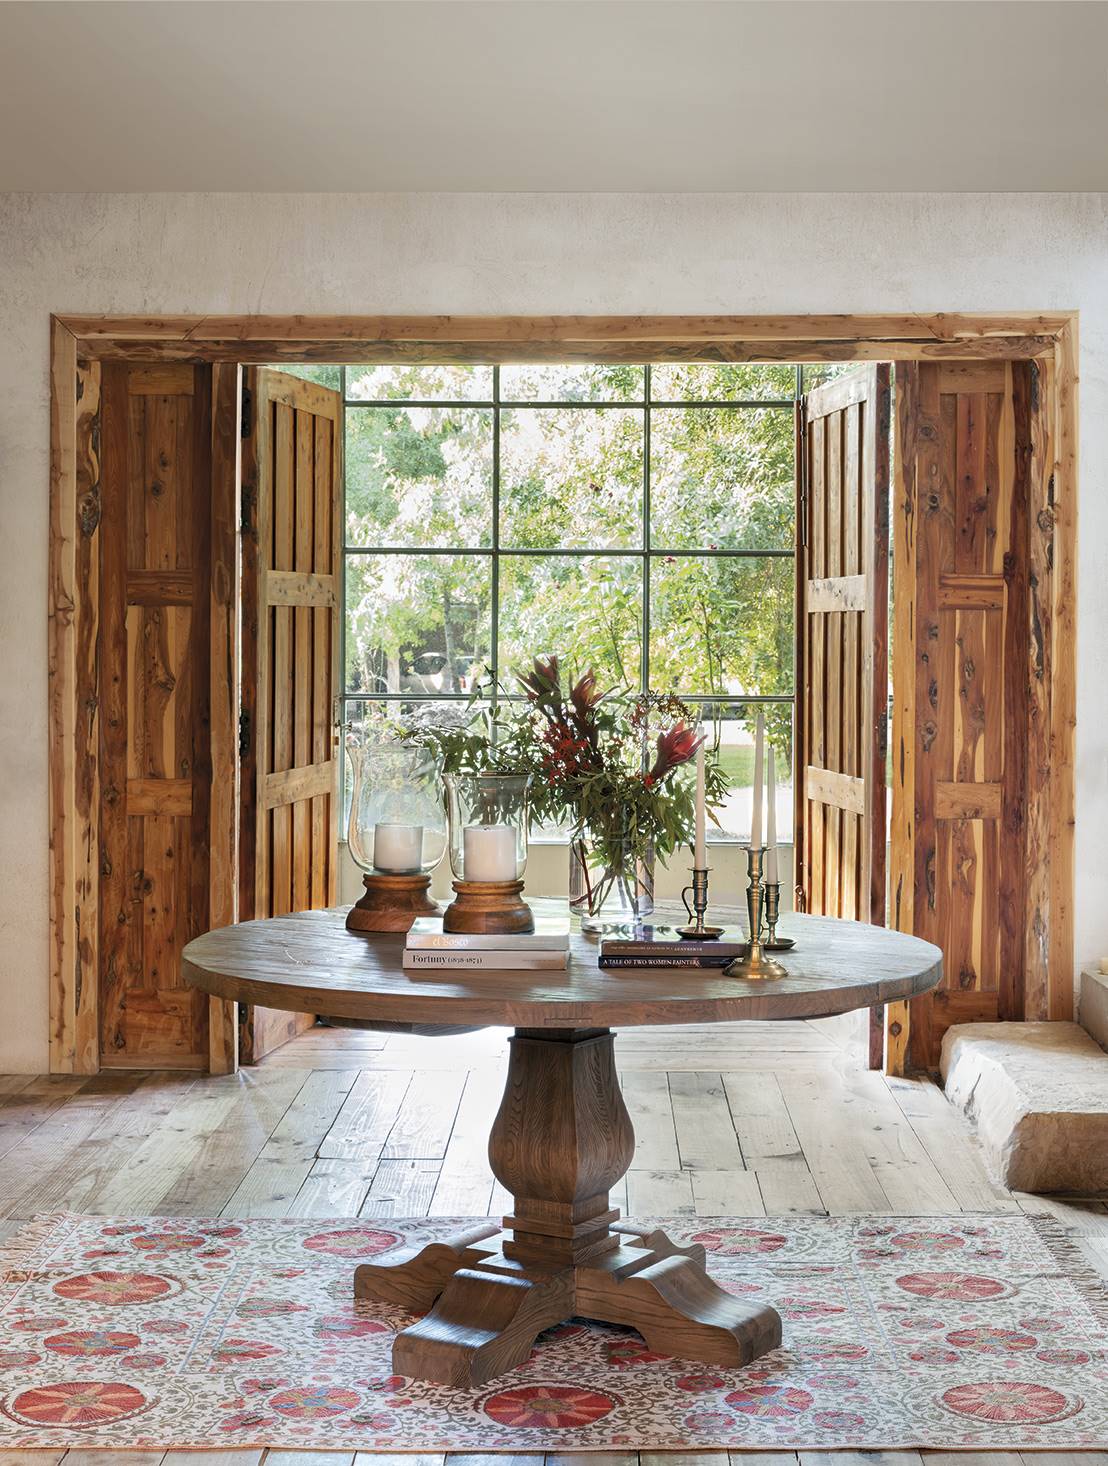 Un recibidor cálido decorado con una mesa redonda de madera y una alfombra clásica.